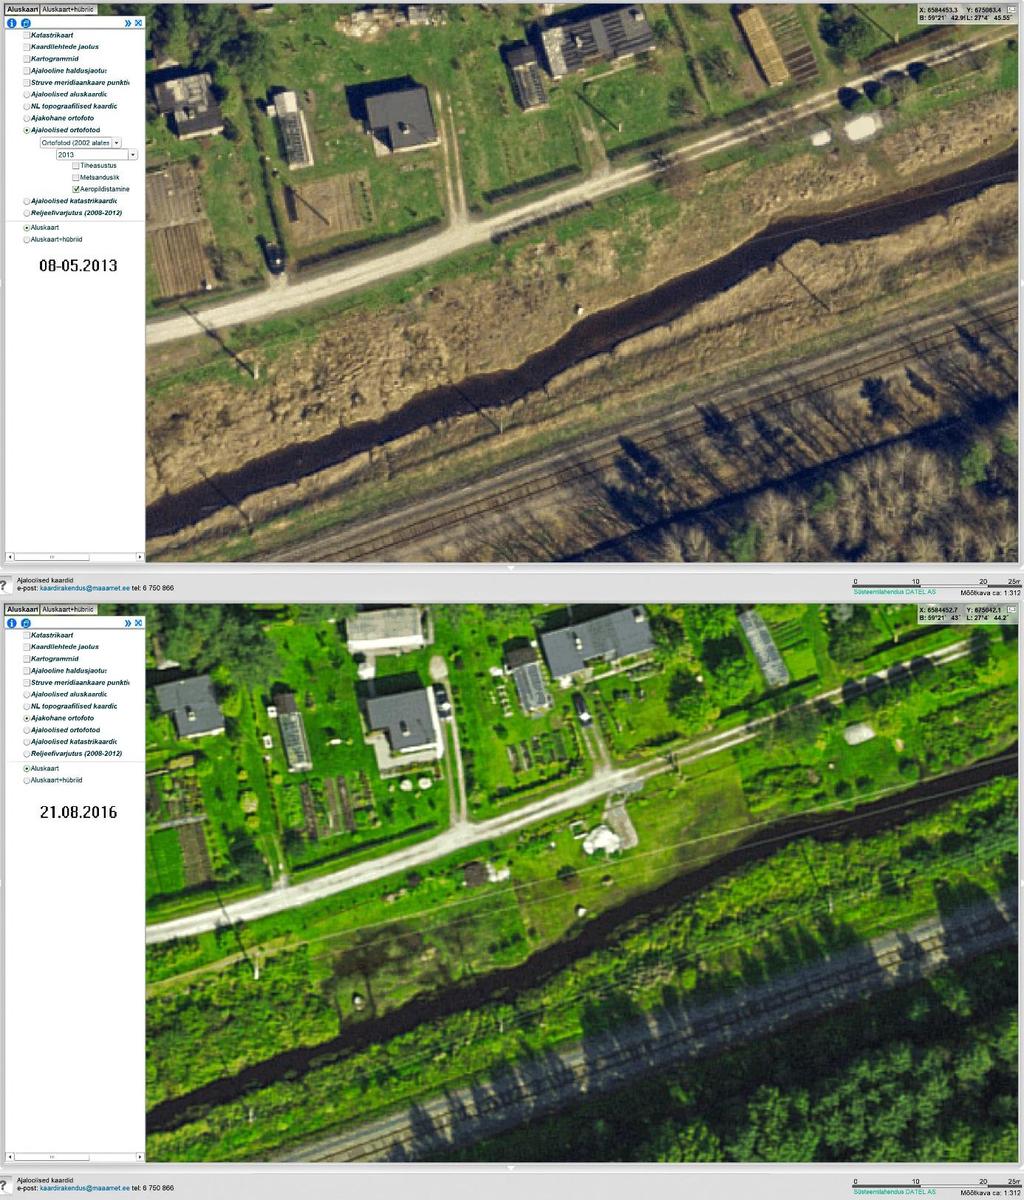 13 Foto 2 Maa-ameti aerofotod Kohtla jõest 2013 ja 1016 4 I etapi tööde kirjeldus, väliuuringud Esmalt koostati uuringupiirkonna kohta Aidu karjääri põhjaosani ulatuv kõrgusmudel Maaameti LIDAR